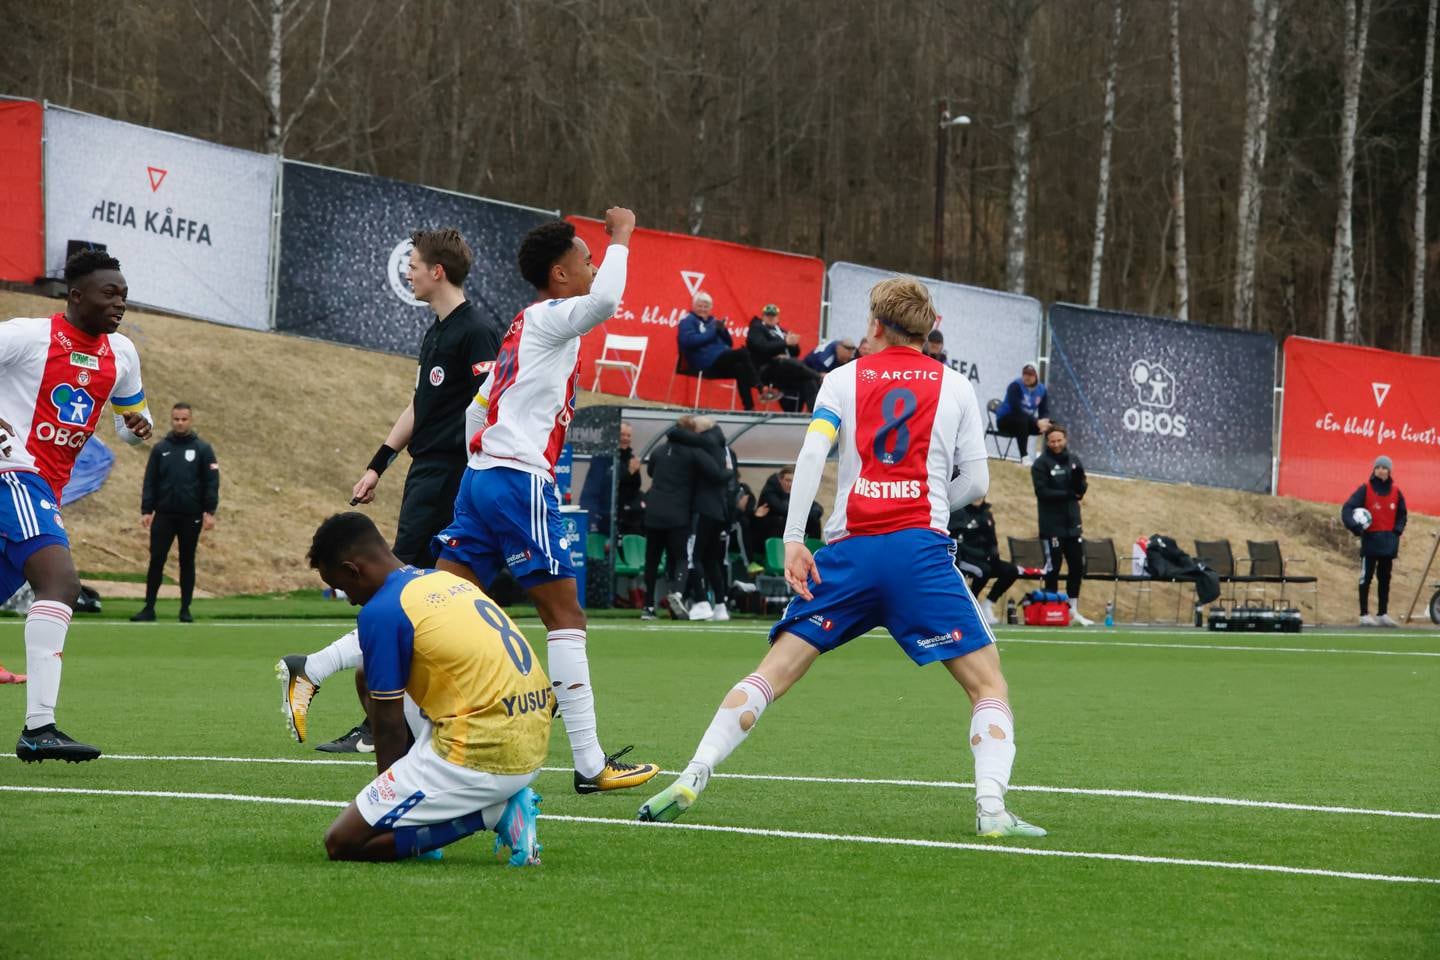 Petter Nosakhare Dahl scoret sesongens første mål på KFUM arena.